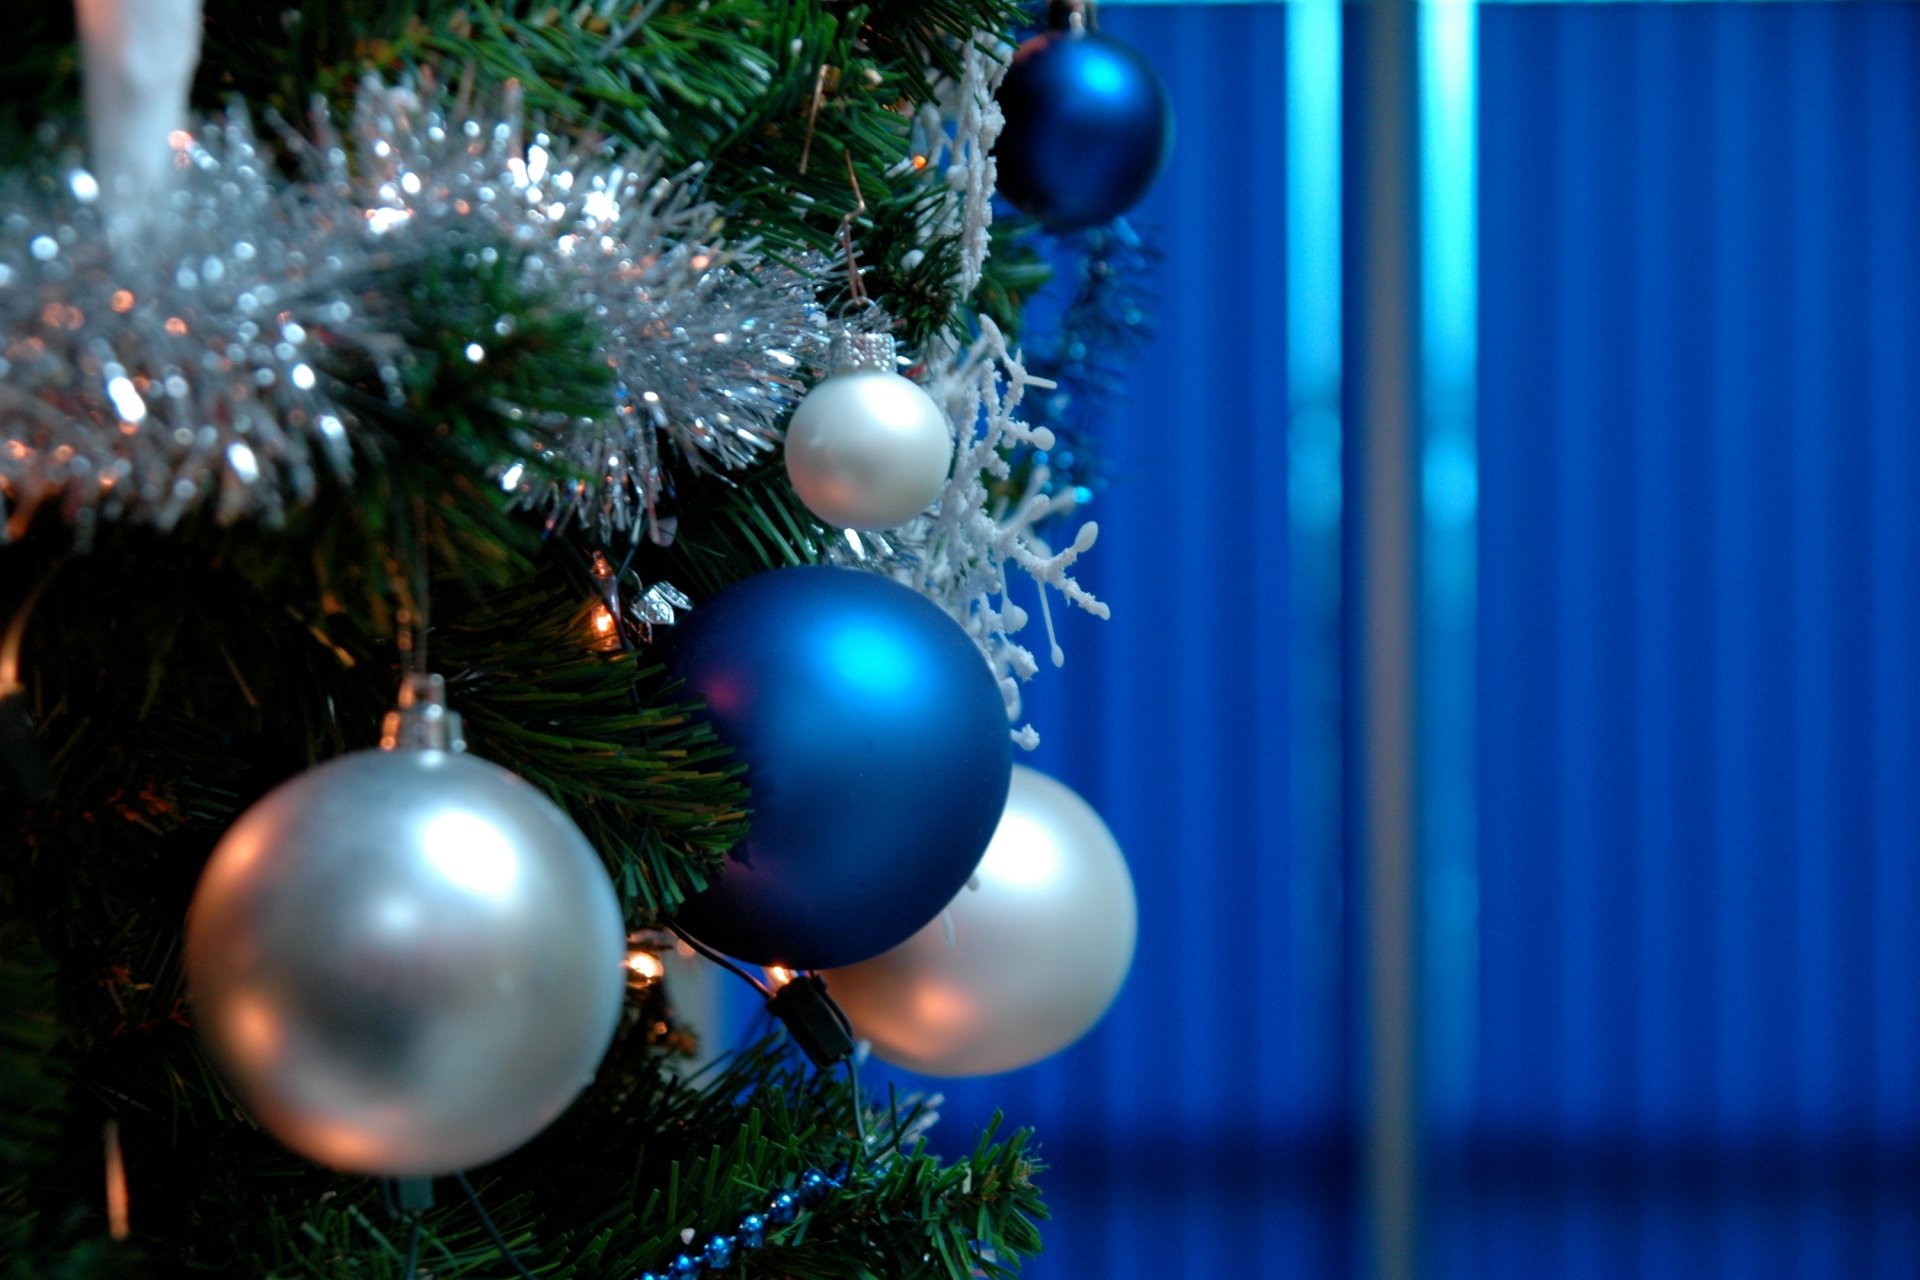 праздник новый год рождество новогодние украшения игрушки шар ель елка фон обои широкоформатные полноэкранные широкоэкранные широкоформатный